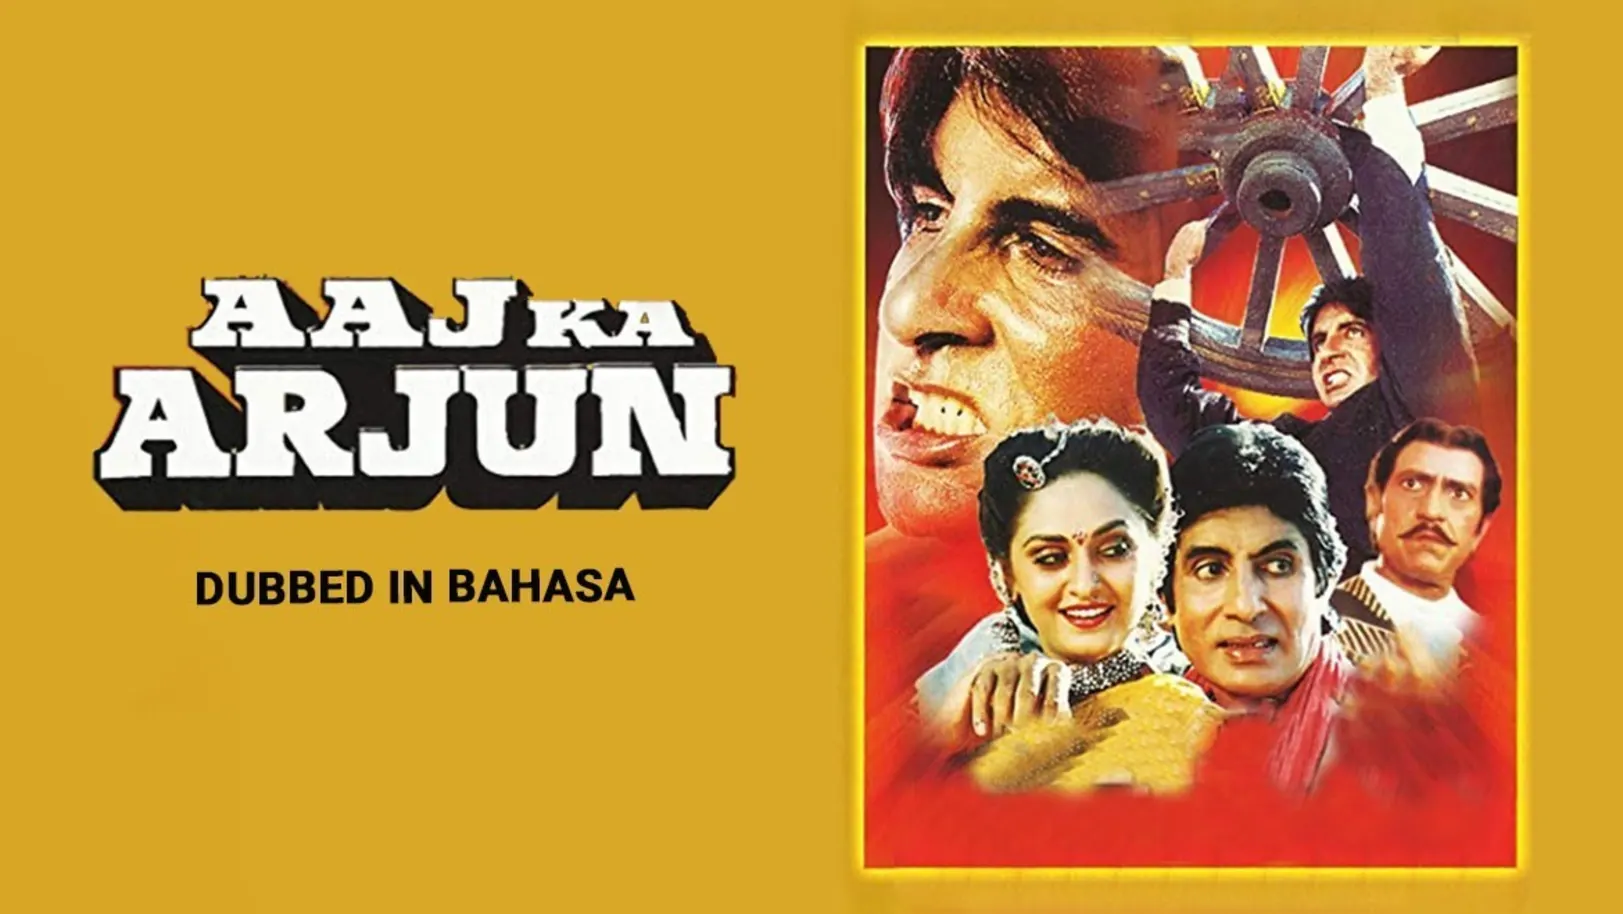 Aaj Ka Arjun Movie